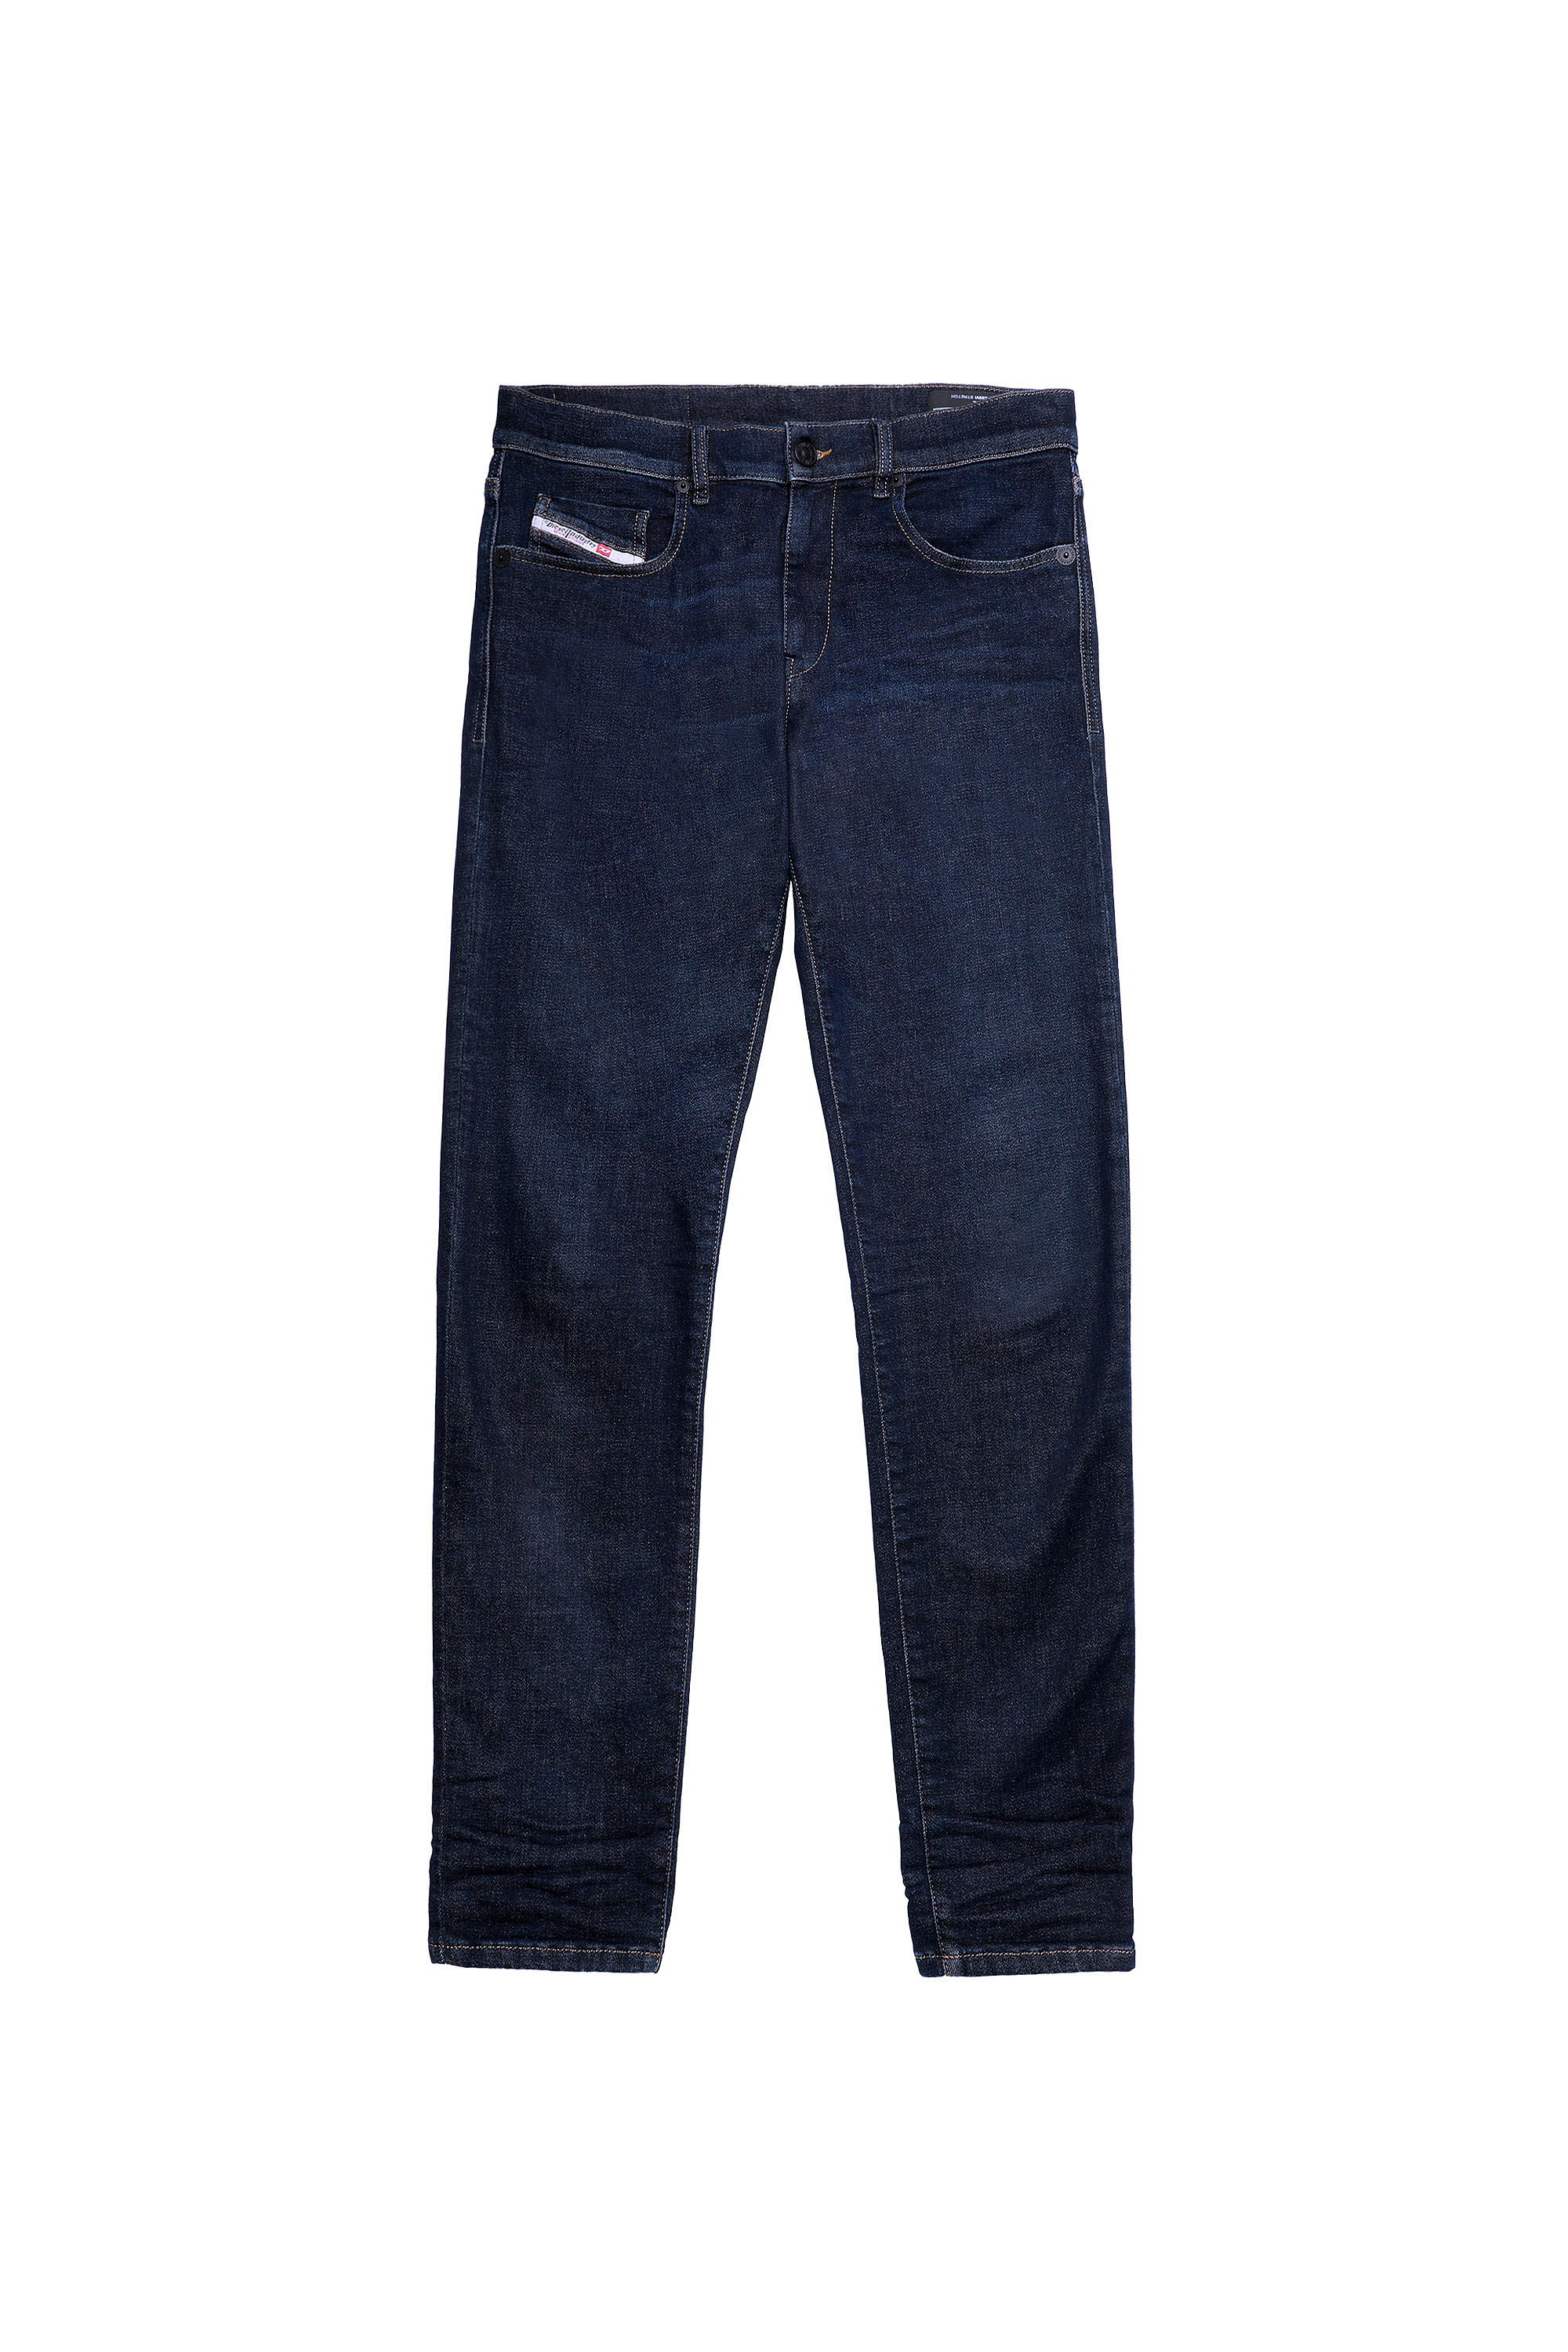 Diesel - D-Strukt Slim JoggJeans® Z69VI, Dark Blue - Image 6